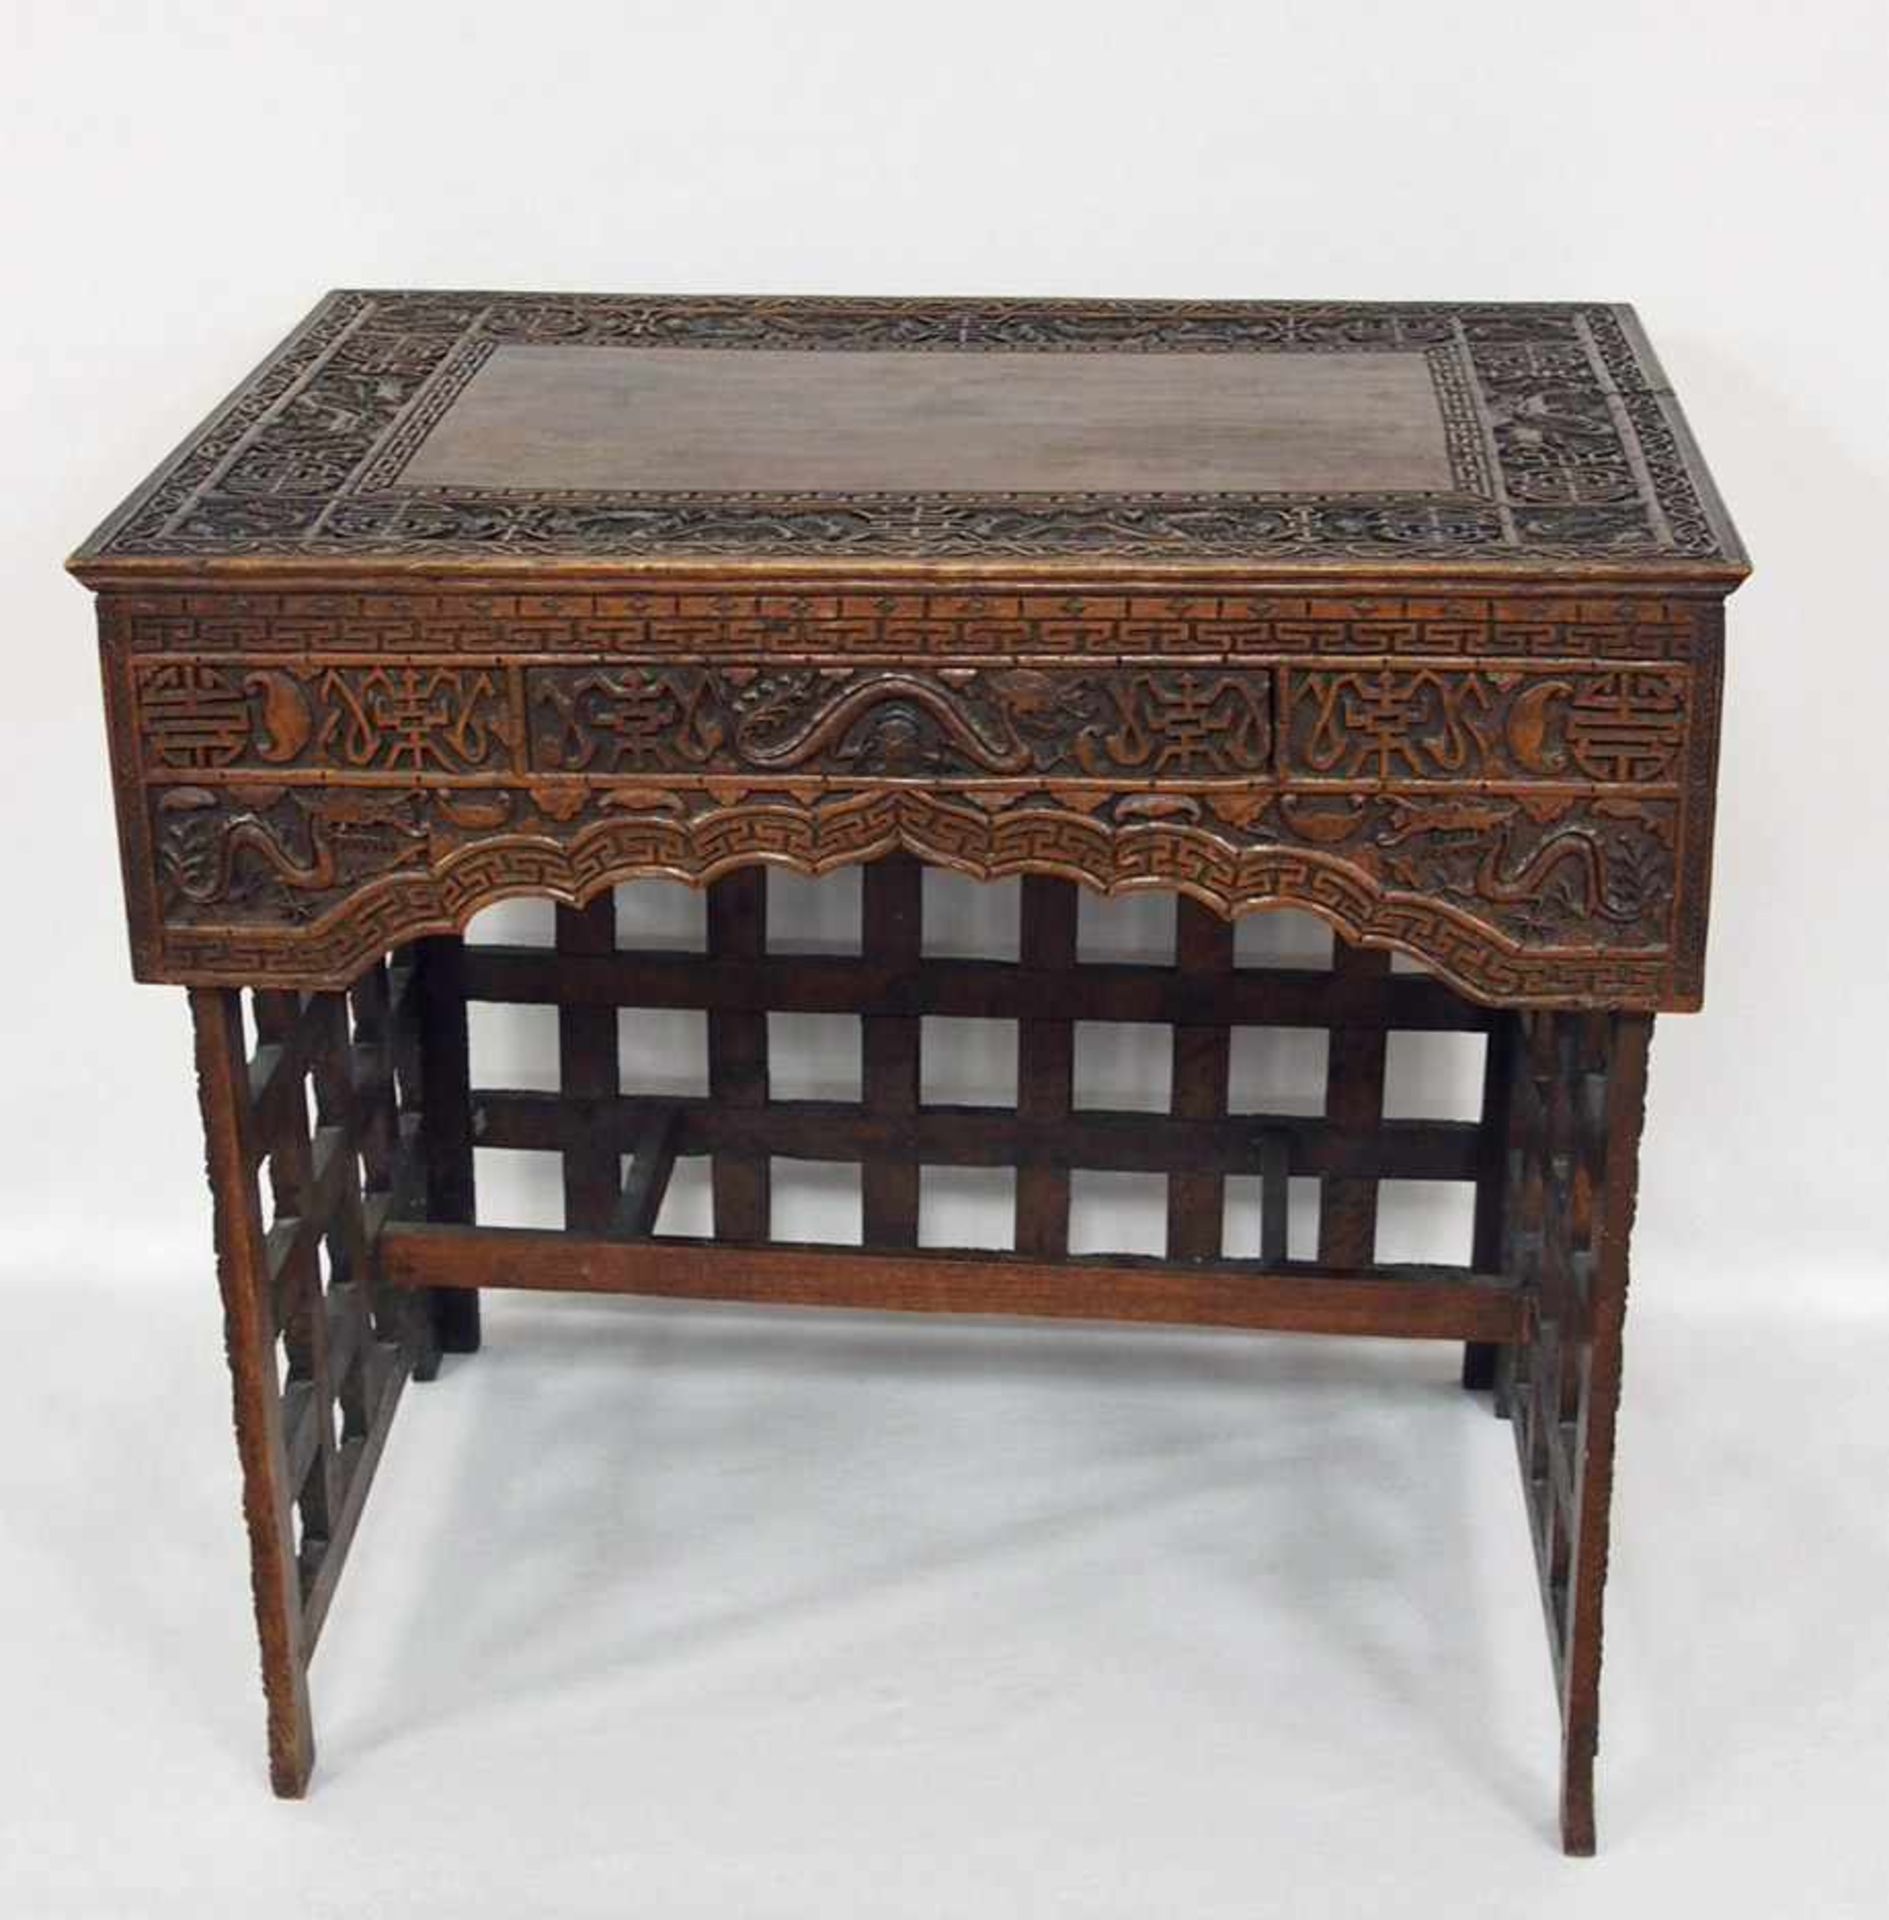 Chinesischer Tisch mit Schublademit Drachenmotiven, Holz, geschnitzt, um 1850, 62 x 68 x 47 cm - Bild 2 aus 3